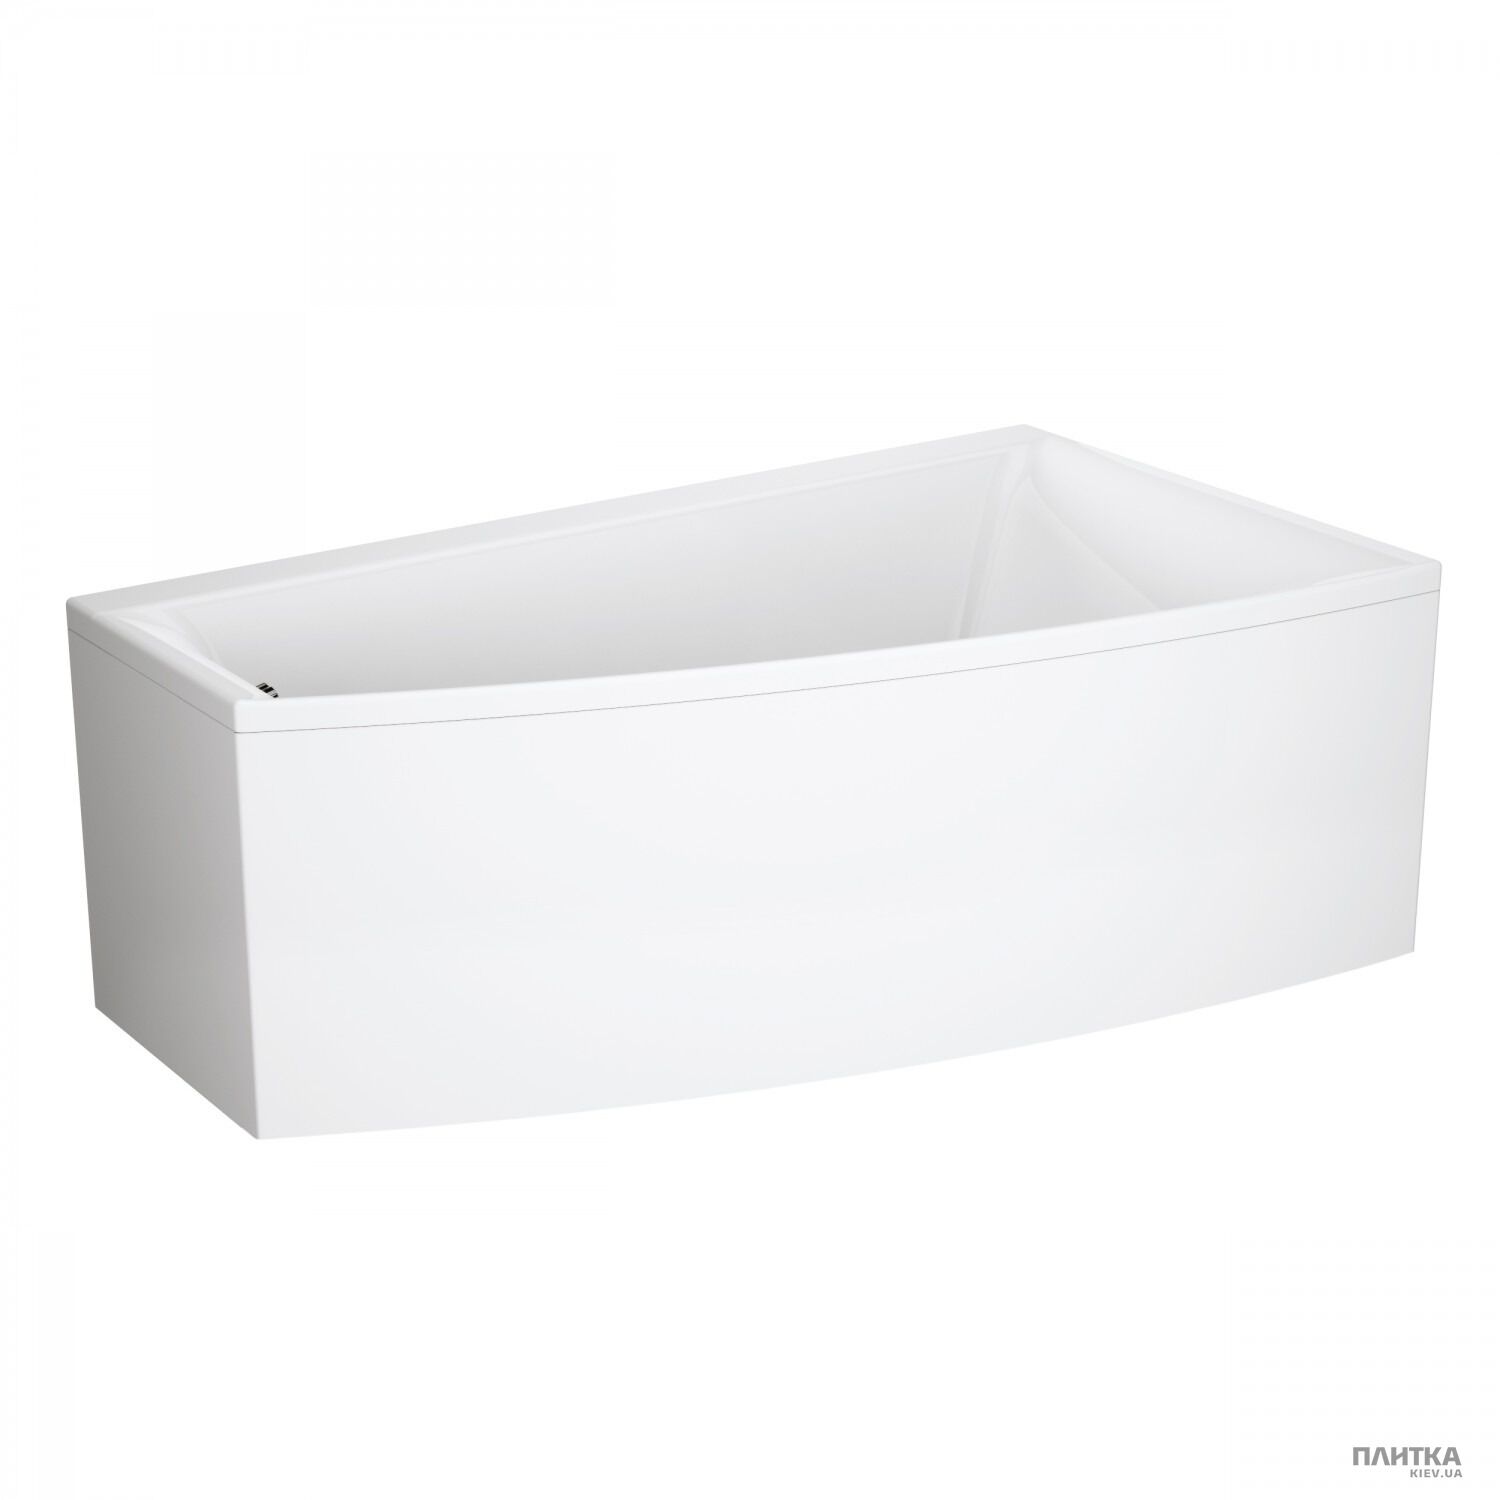 Акриловая ванна Cersanit Virgo max 160x90 см асимметричная правая белый